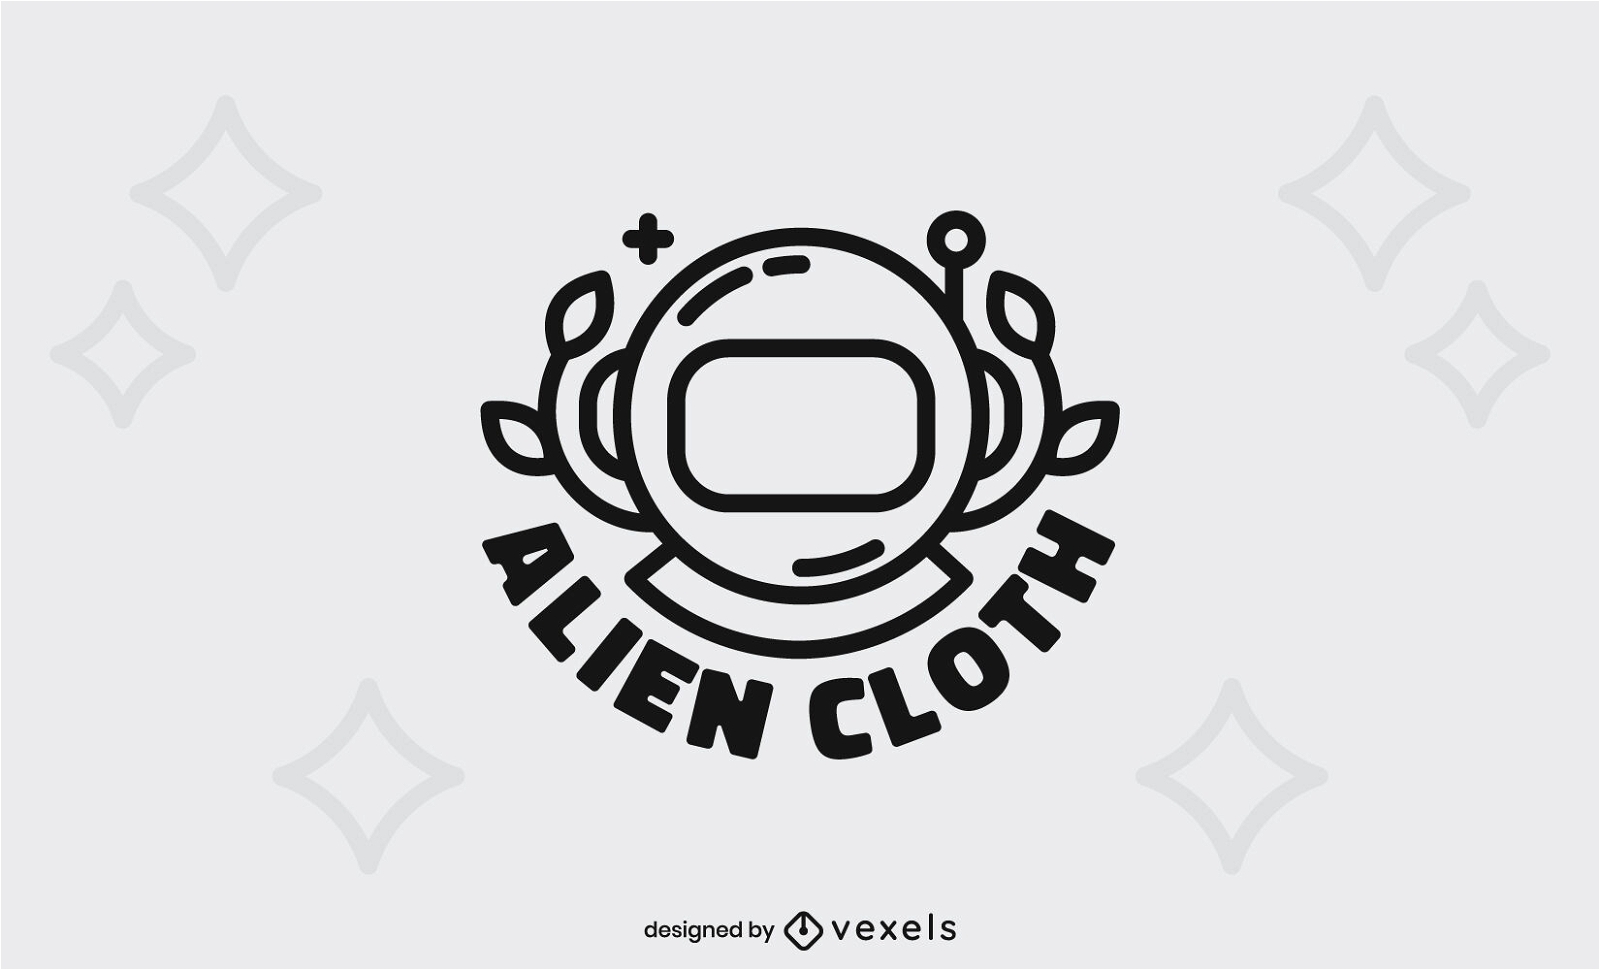 Dise?o de logotipo de empresa de astronauta espacial alien?gena